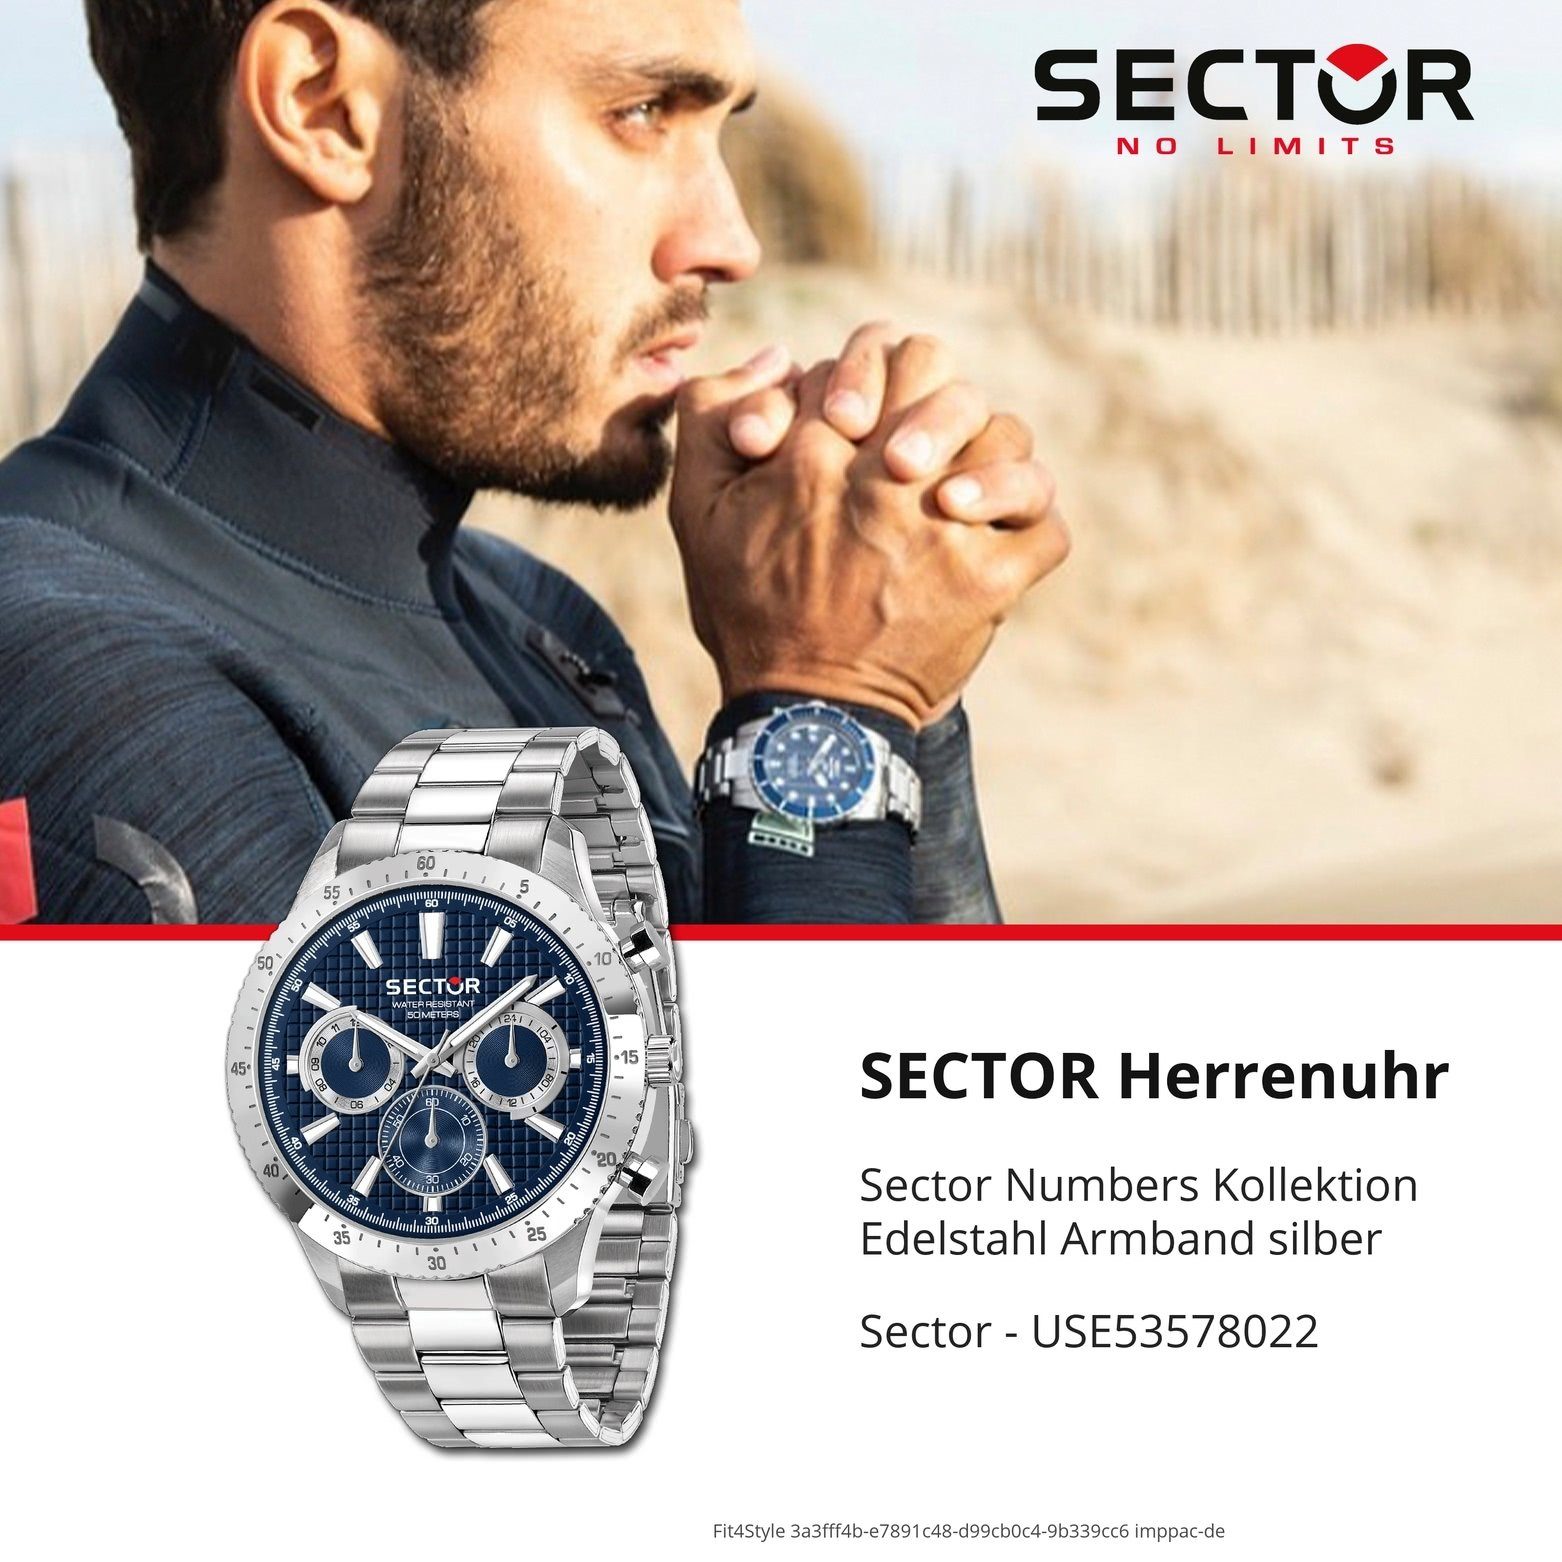 mittel Multifunkt, Fashion-Style 37mm), Multifunktionsuhr Armbanduhr rund, Sector Herrenuhr Herren Sector Edelstahlarmband, (ca.